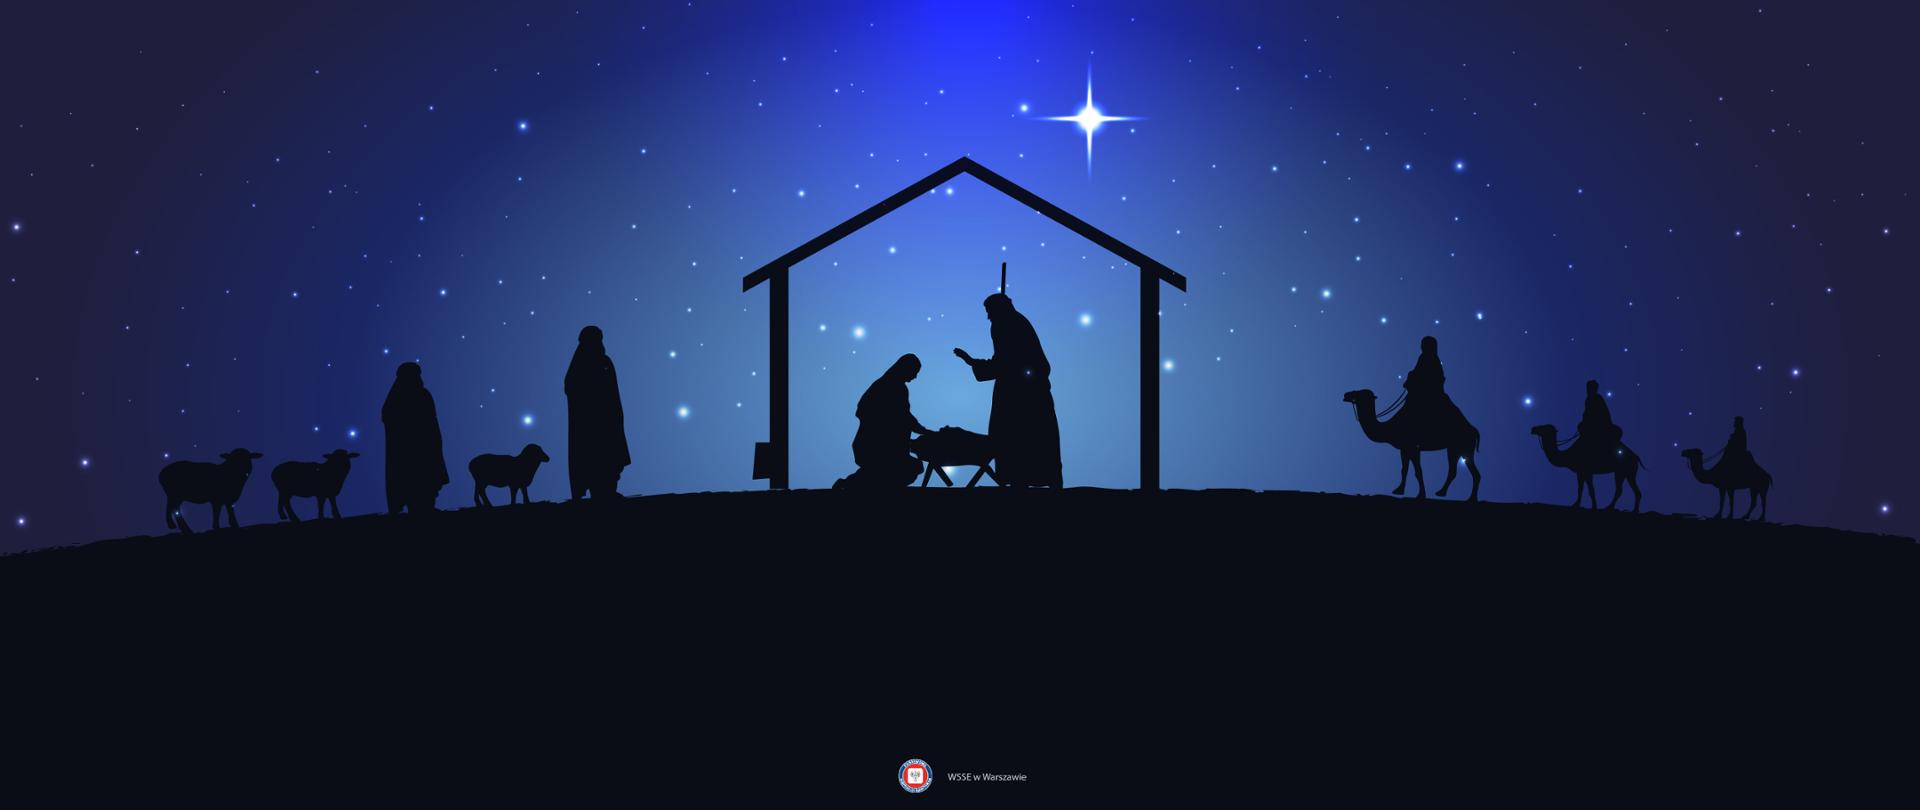 Grafika przedstawiająca szopkę, w której znajduje się Maryja z Józefem przy żłóbku. Obok po prawej do szopki zmierzają trzej królowie na wielbłądach. Po lewej pasterze z owcami. Nad szopką rozgwieżdżone niebo i duża gwiazda betlejemska.